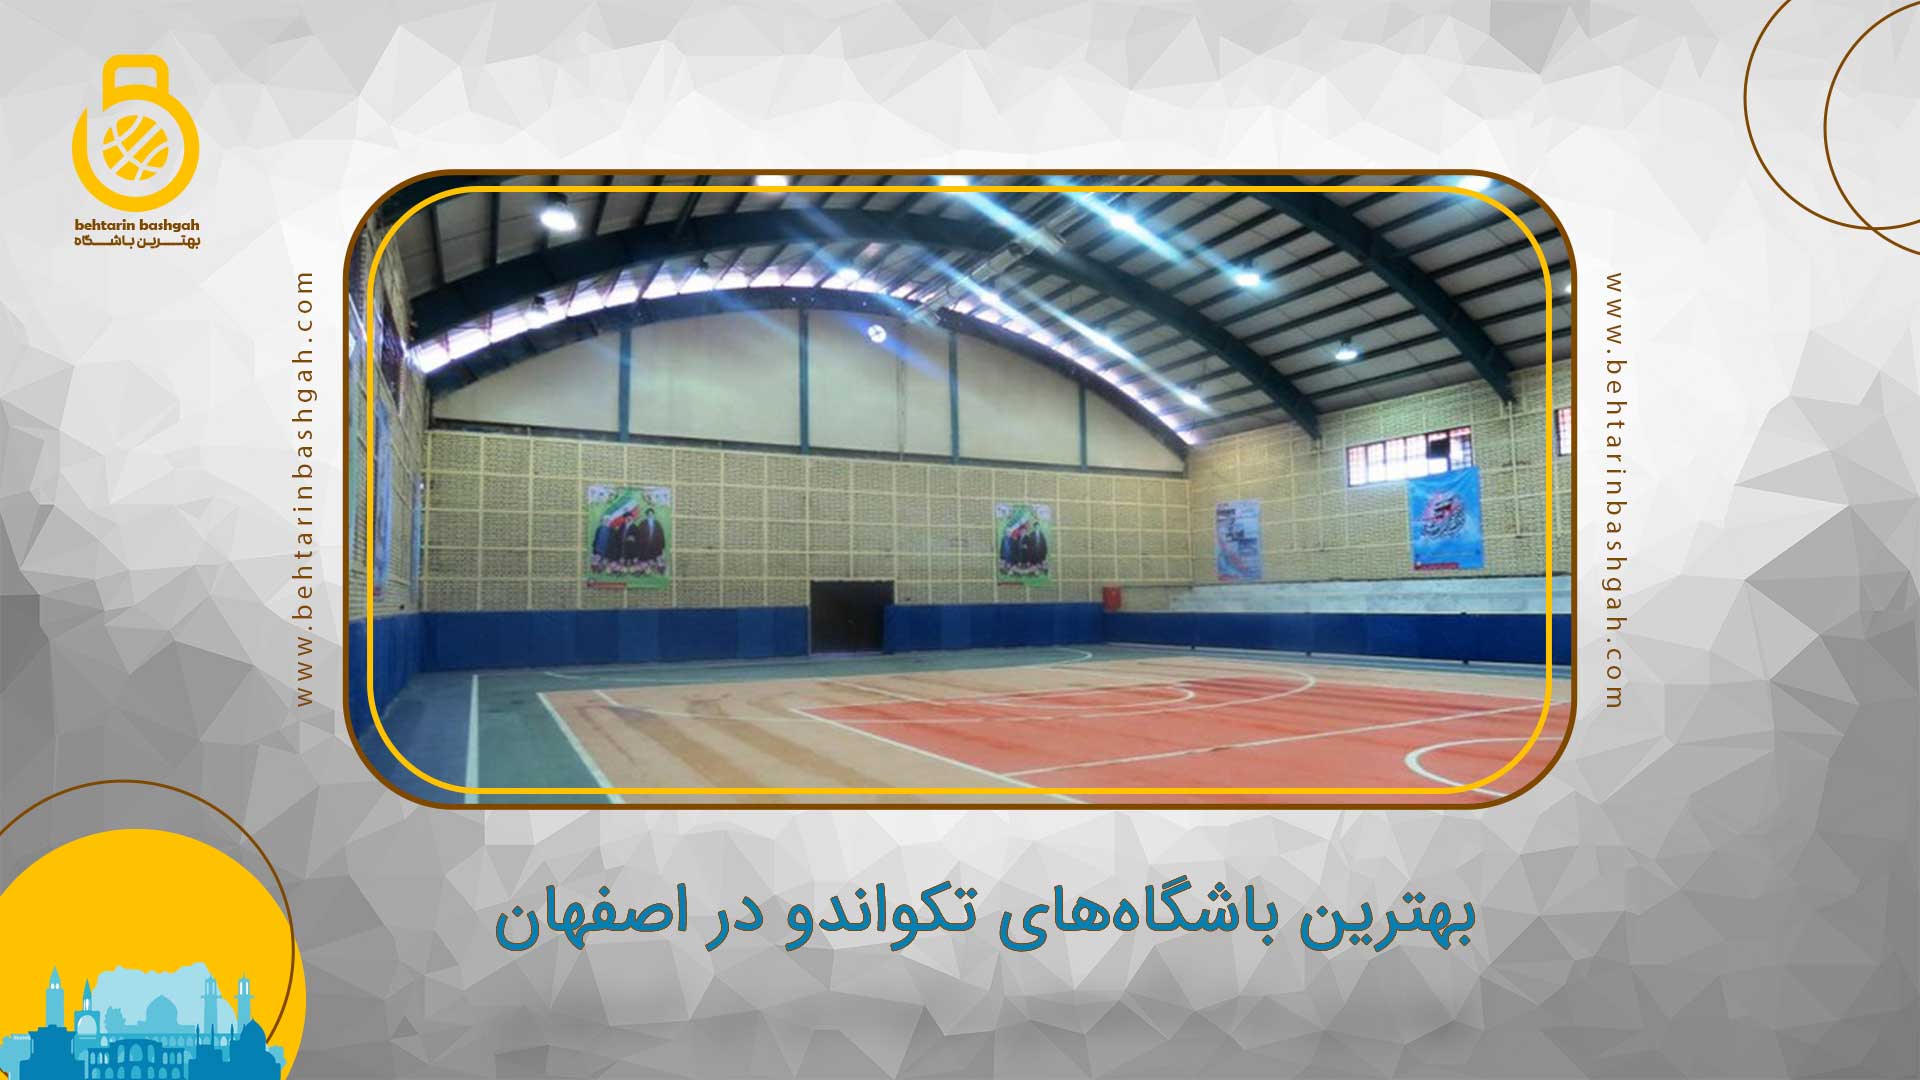 بهترین باشگاه های والیبال در اصفهان